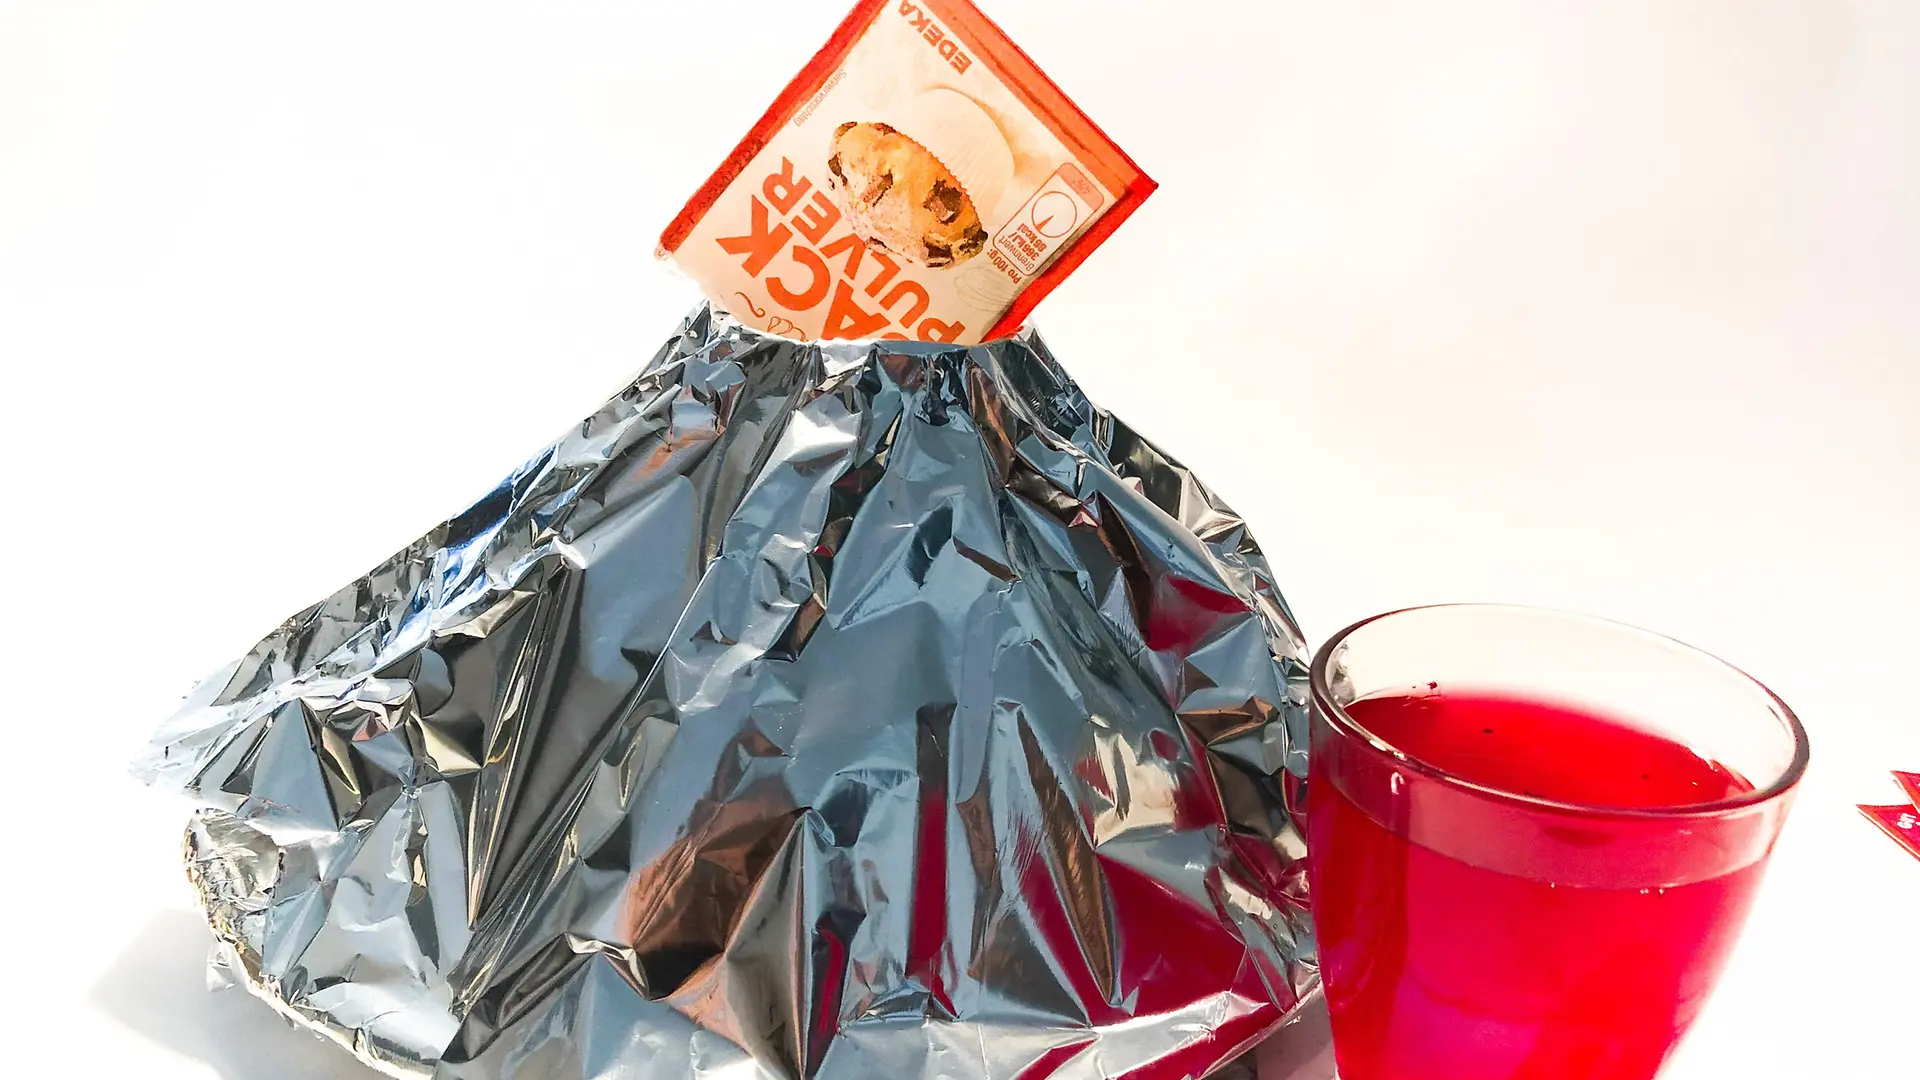 cone de papel alumínio com pacote de fermento em pó em cima e copo cheio de água vermelha